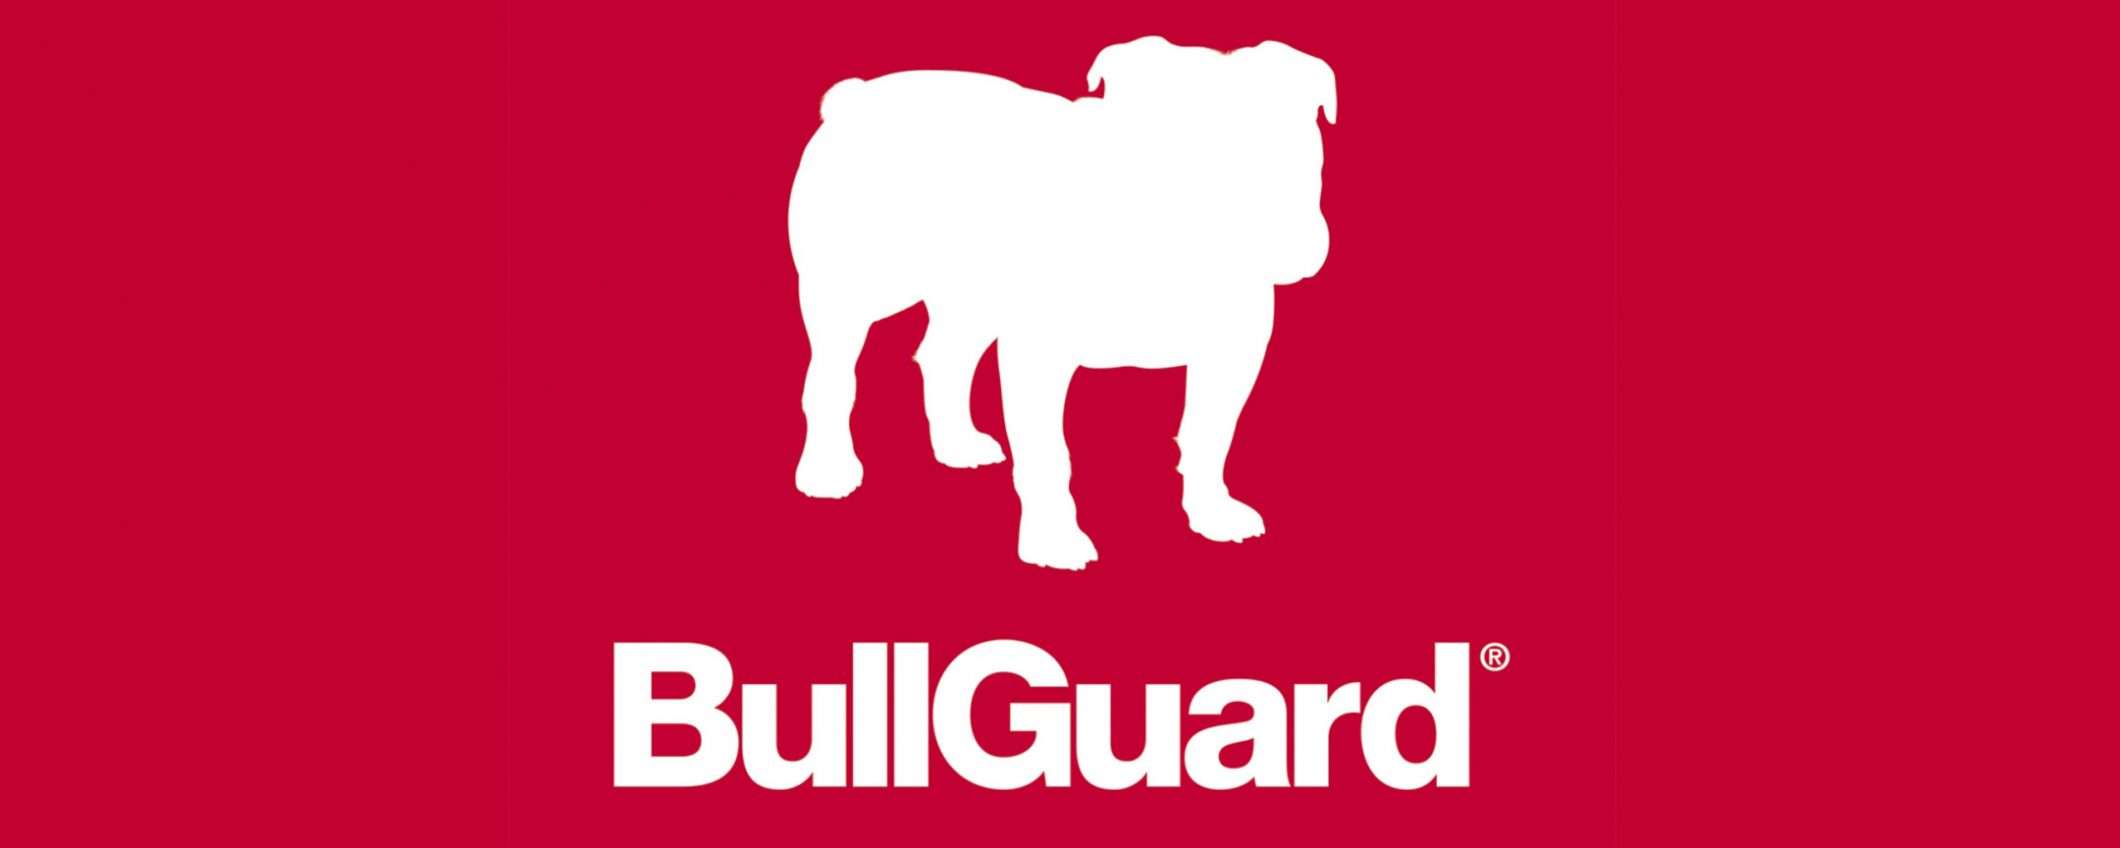 BullGuard, protezione antivirus a prezzi imbattibili